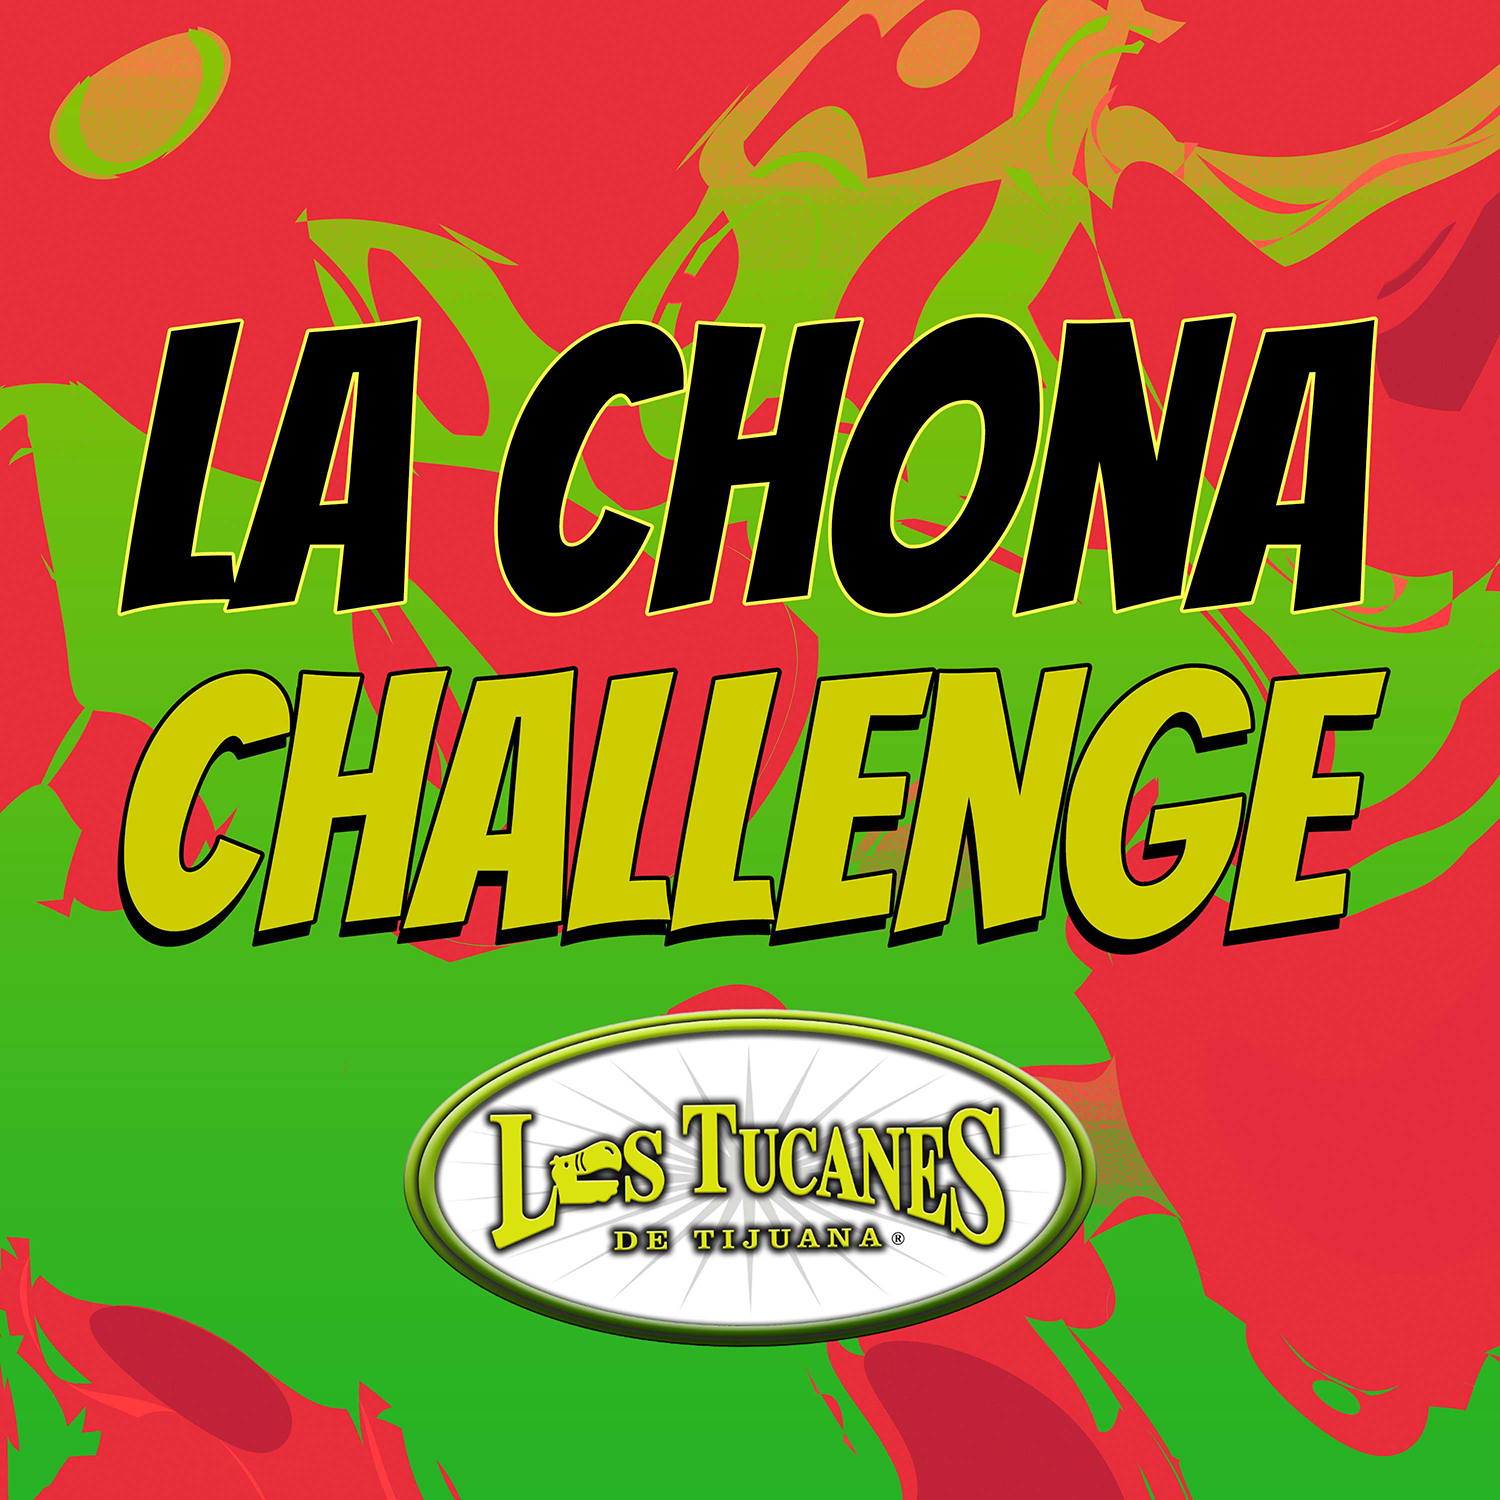 Cuentan la historia de “La Chona Challenge”